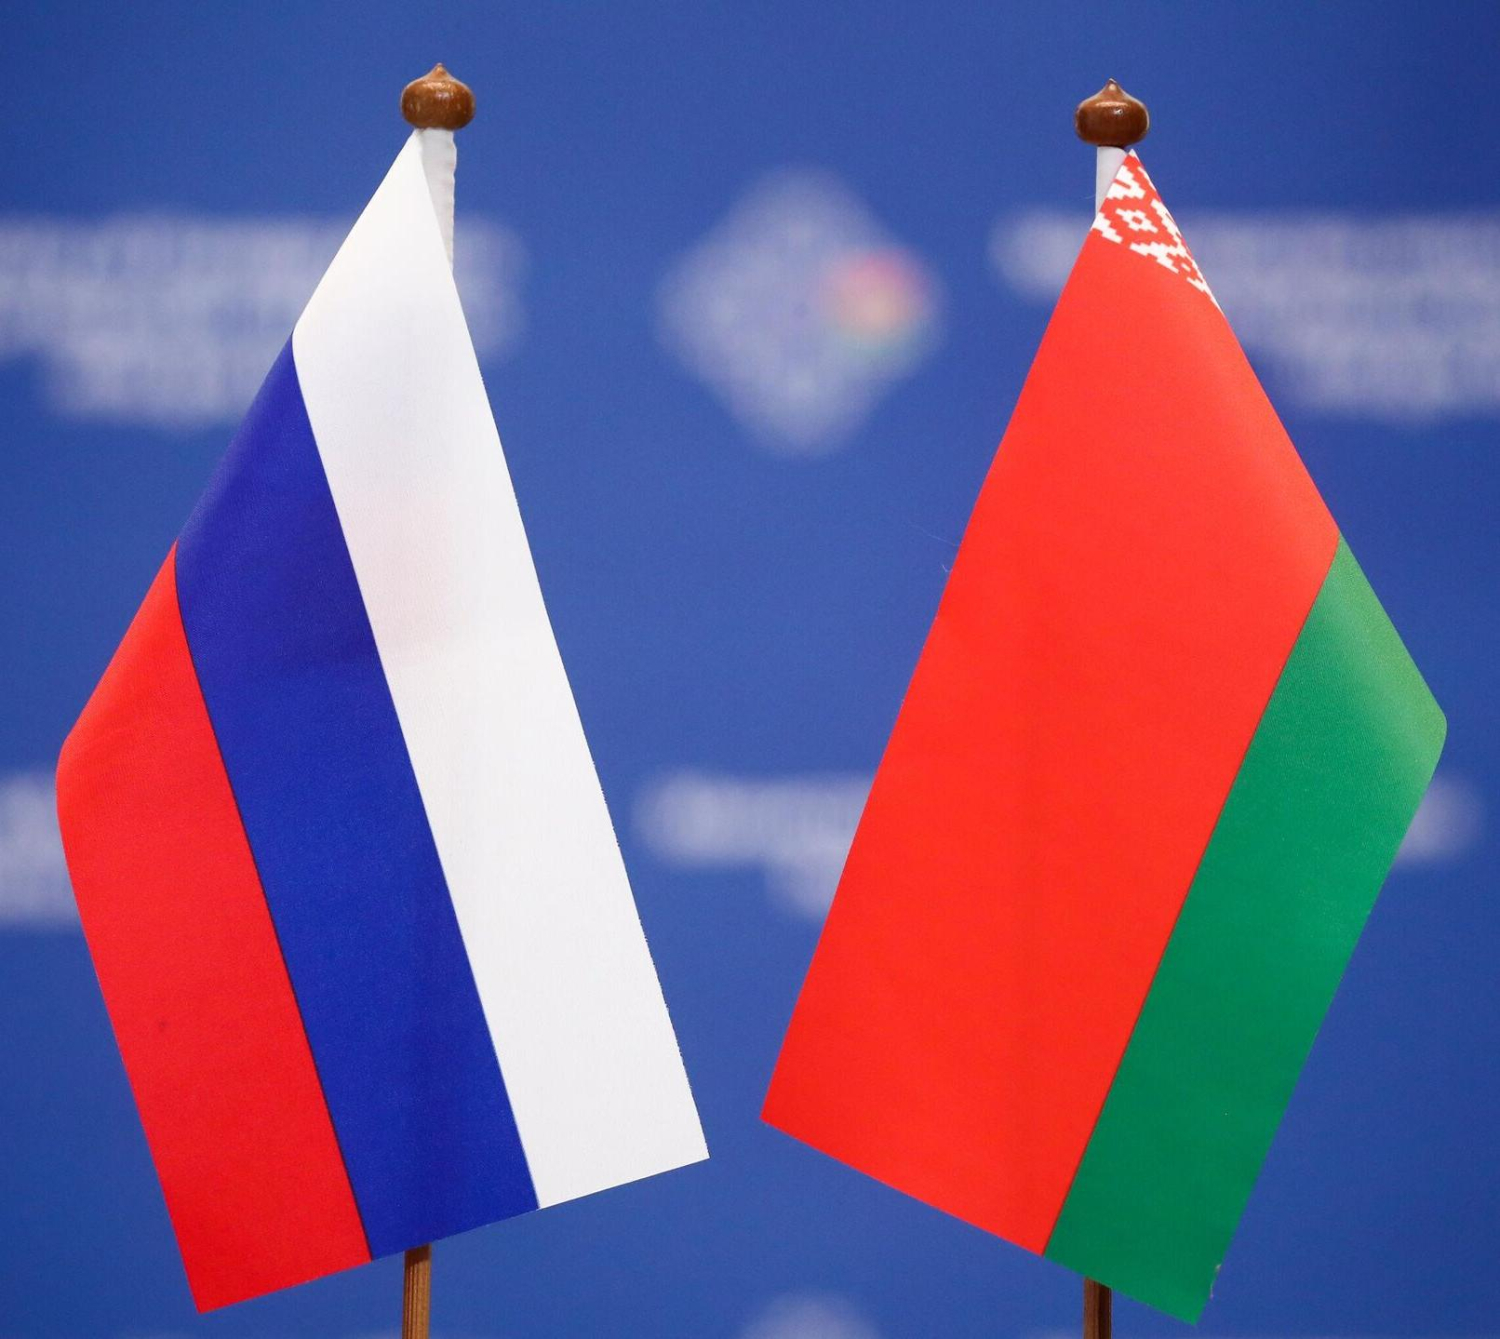 При ввозе в Россию товаров из стран ЕАЭС таможенная декларация не оформляется